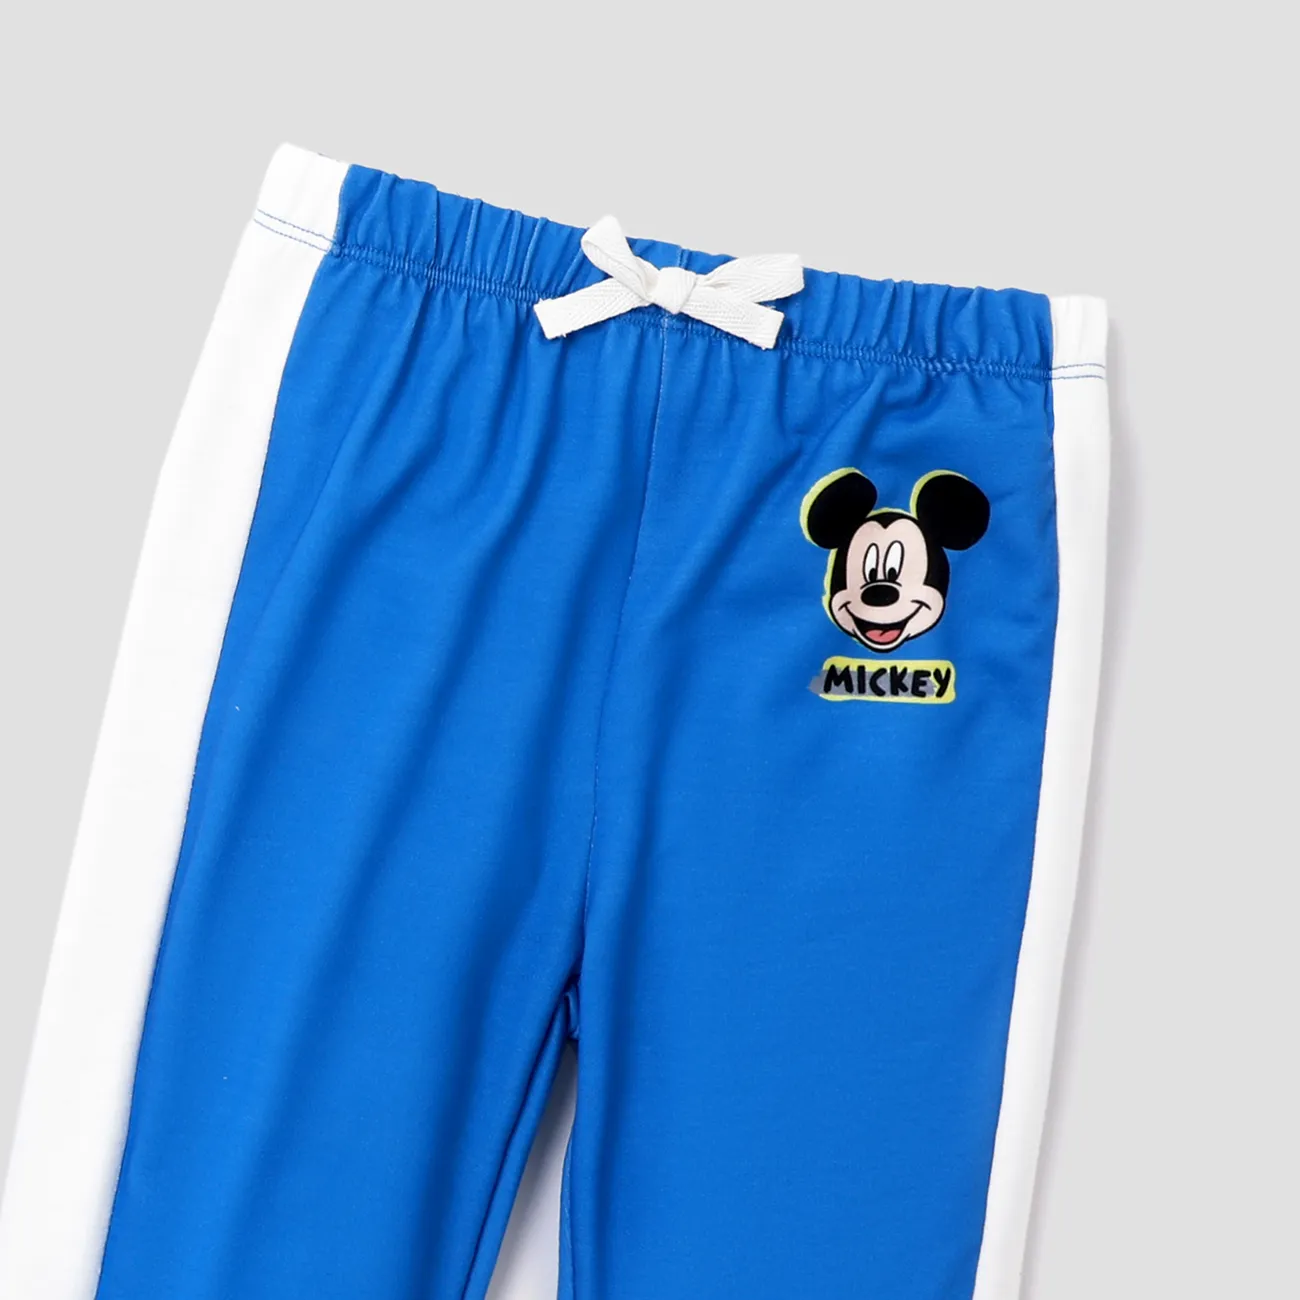 Disney Mickey and Friends 2 unidades Niño pequeño Chico Con capucha Infantil conjuntos de sudadera Azul big image 1